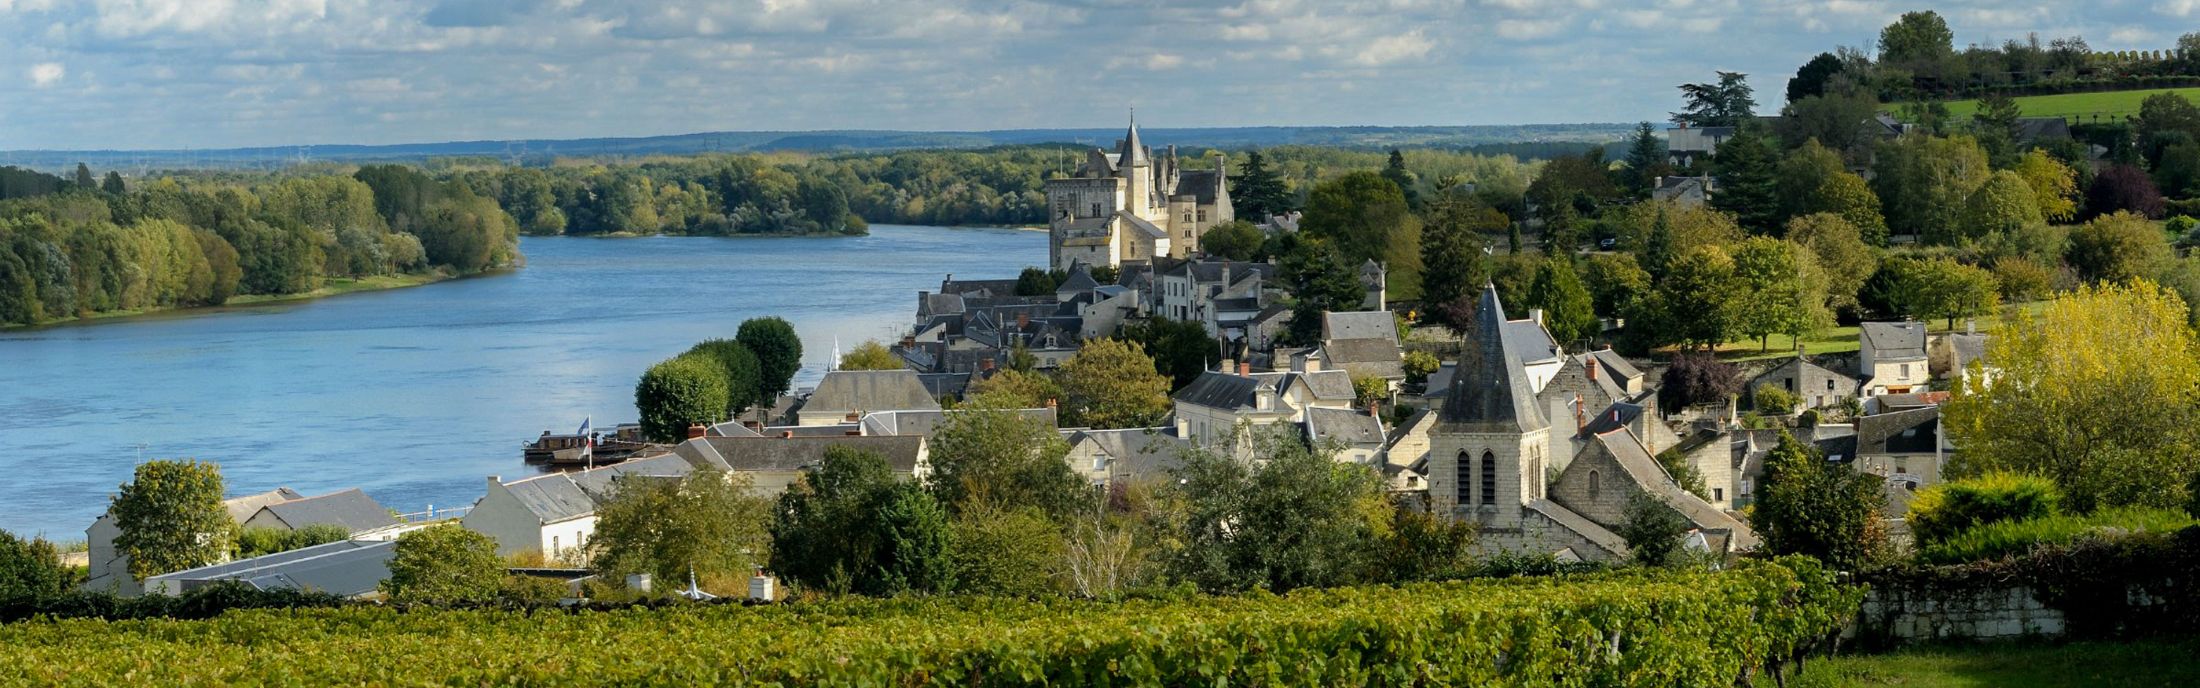 Loire_a_velo_Safrantours_12.jpg